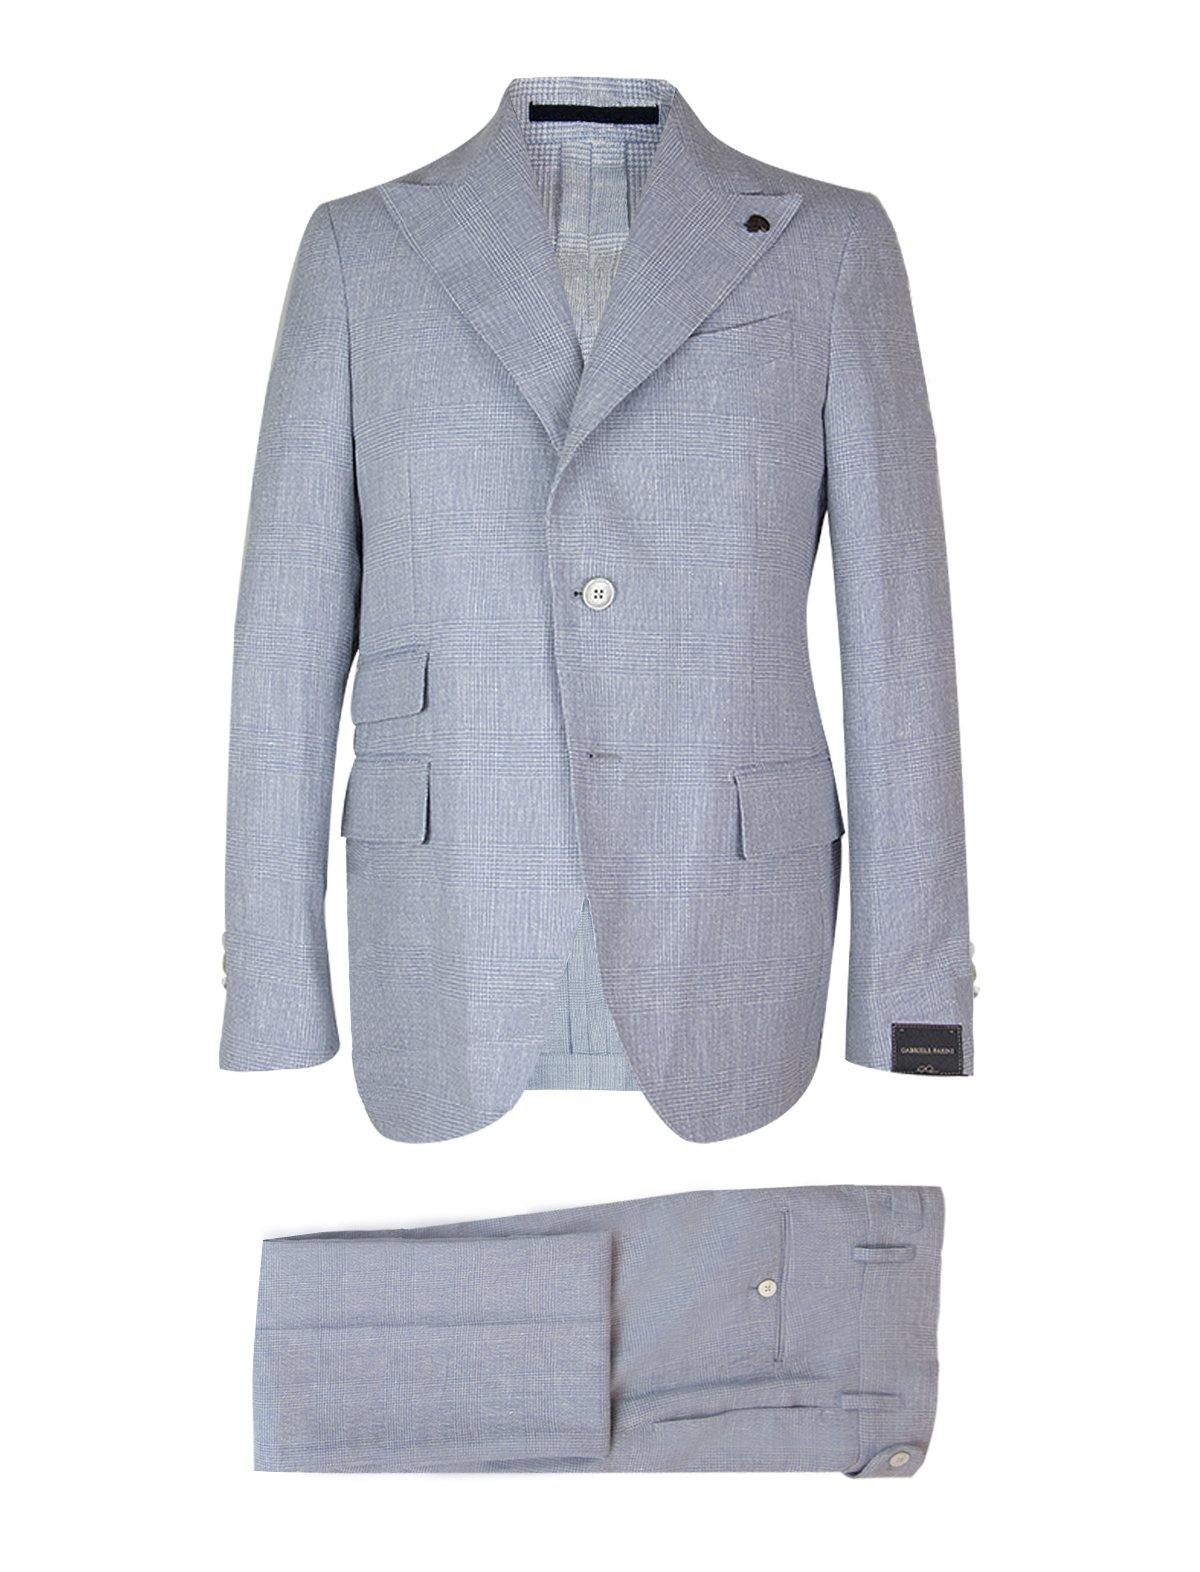 GABRIELE PASINI 2-Piece Linen Blend Suit in Blue Glen Check Print | CLOSET Singapore